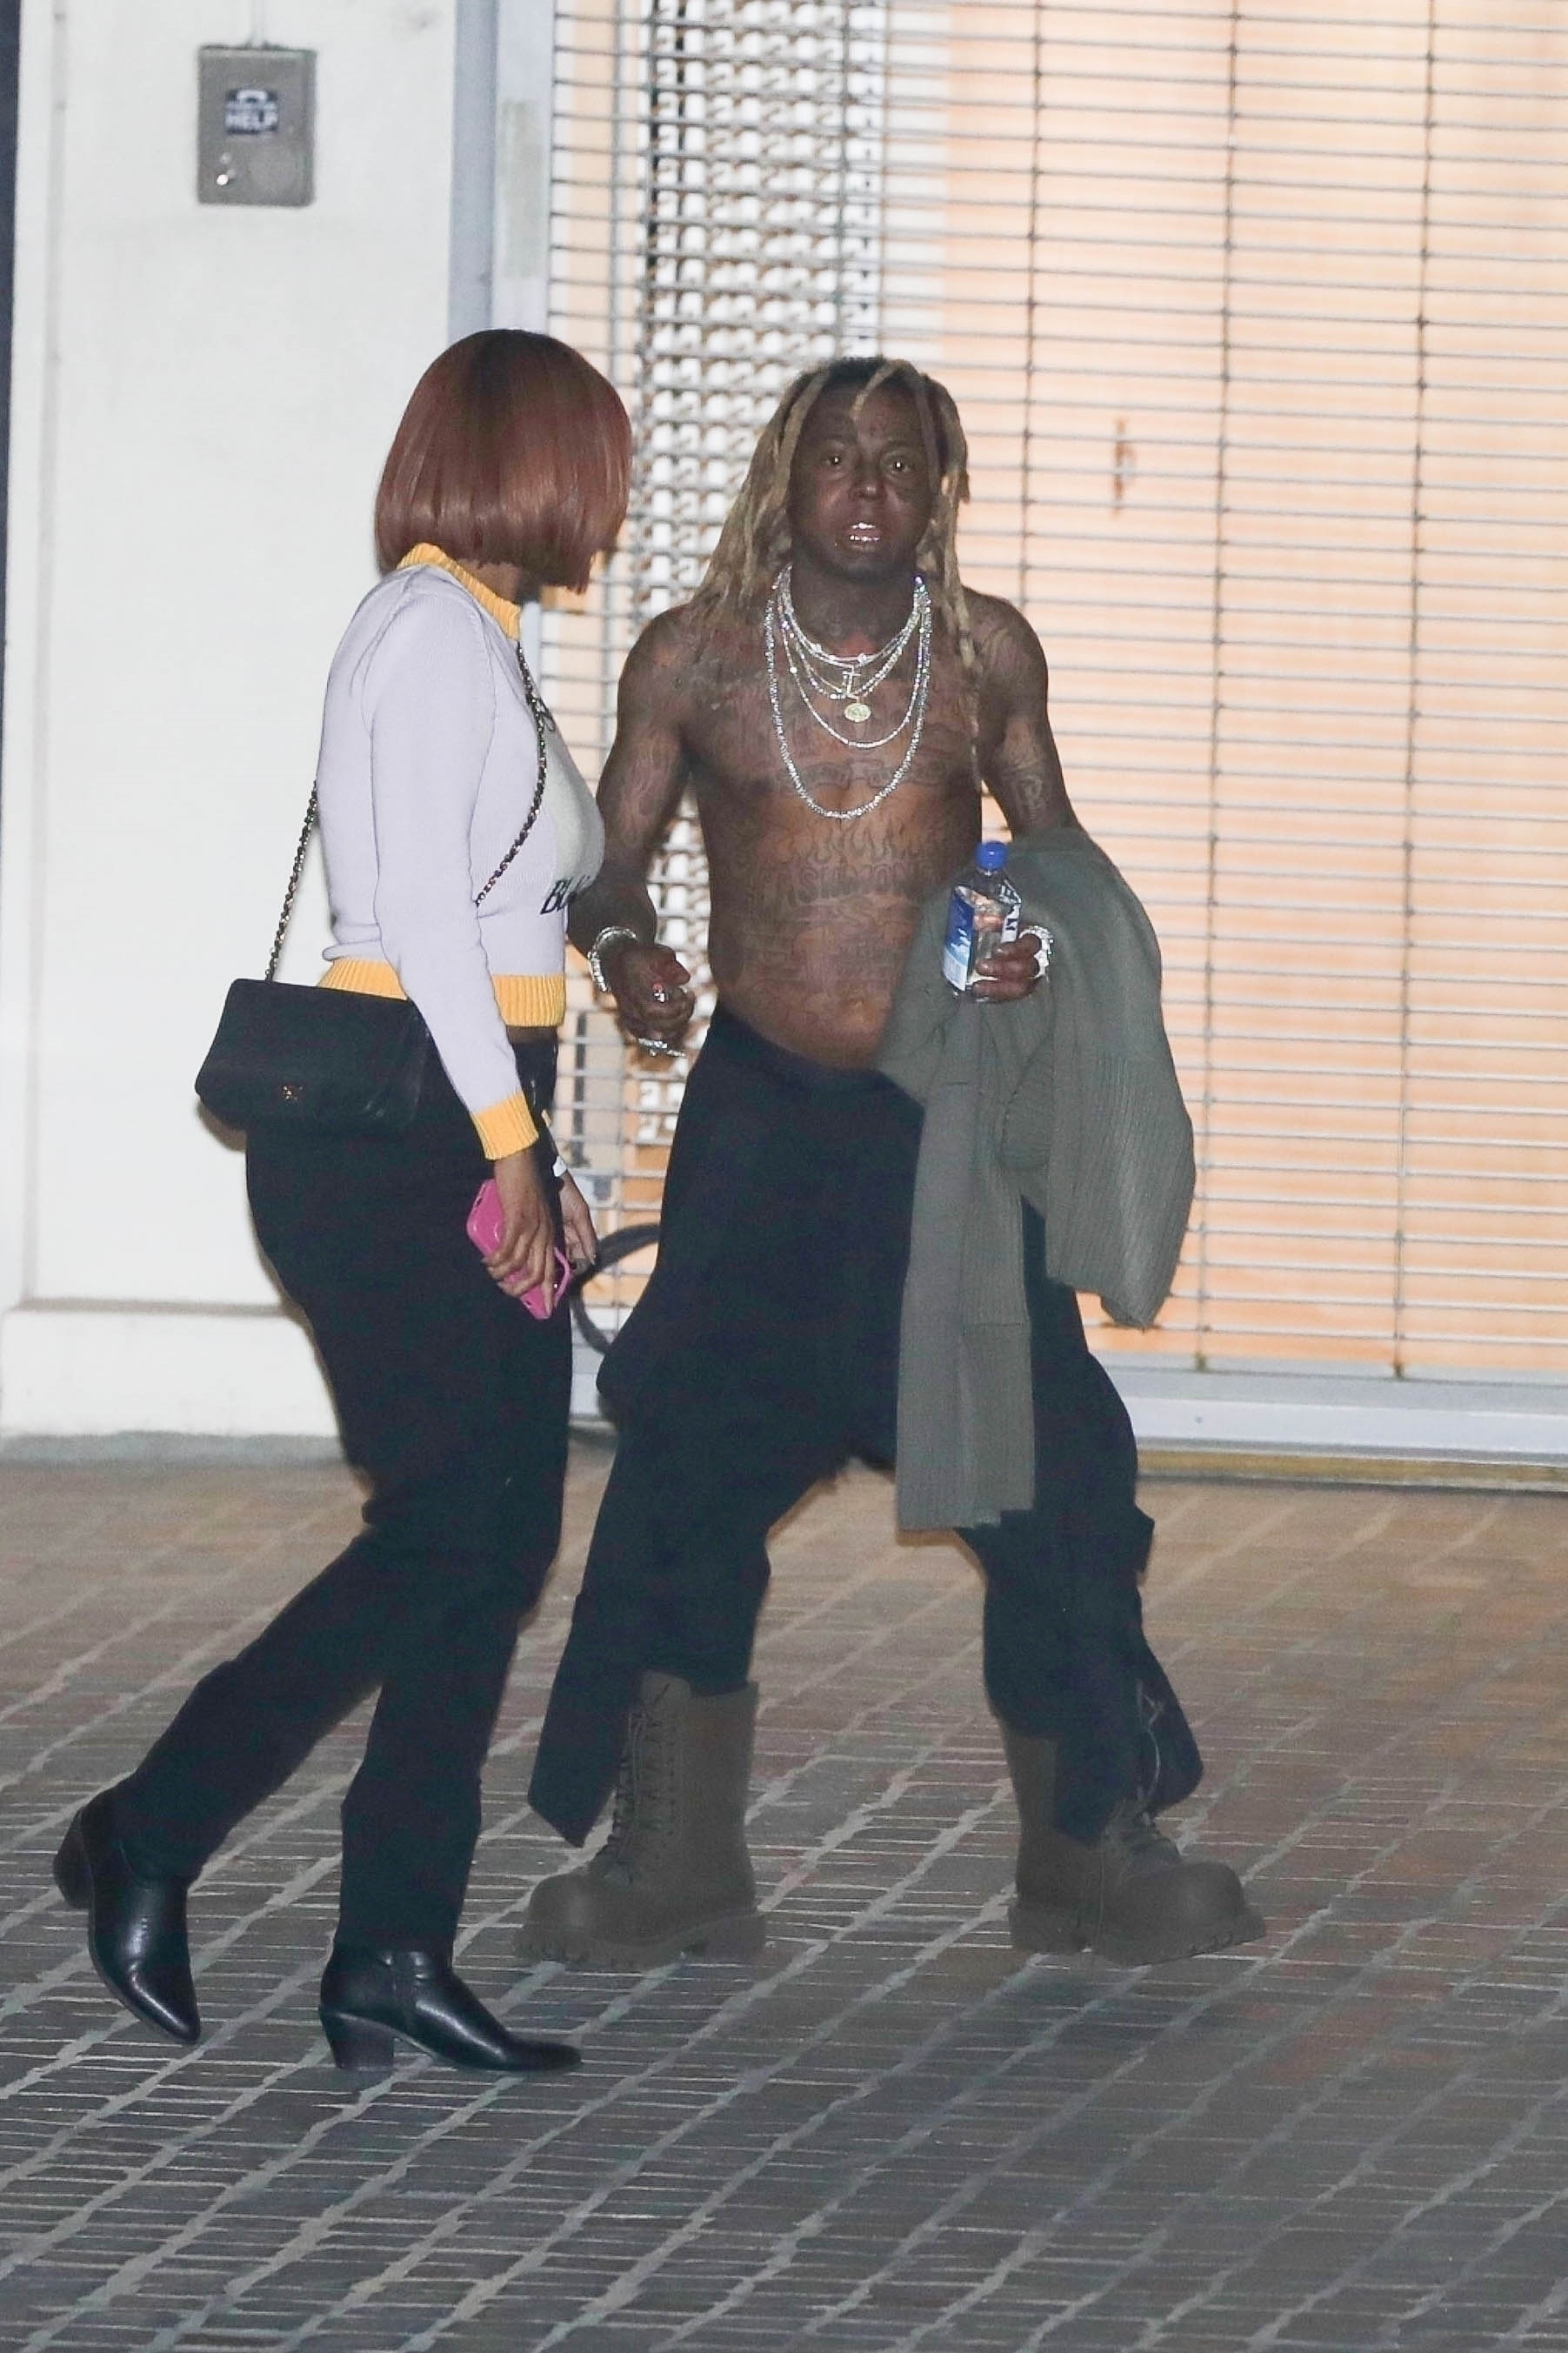 A shirtless Lil Wayne